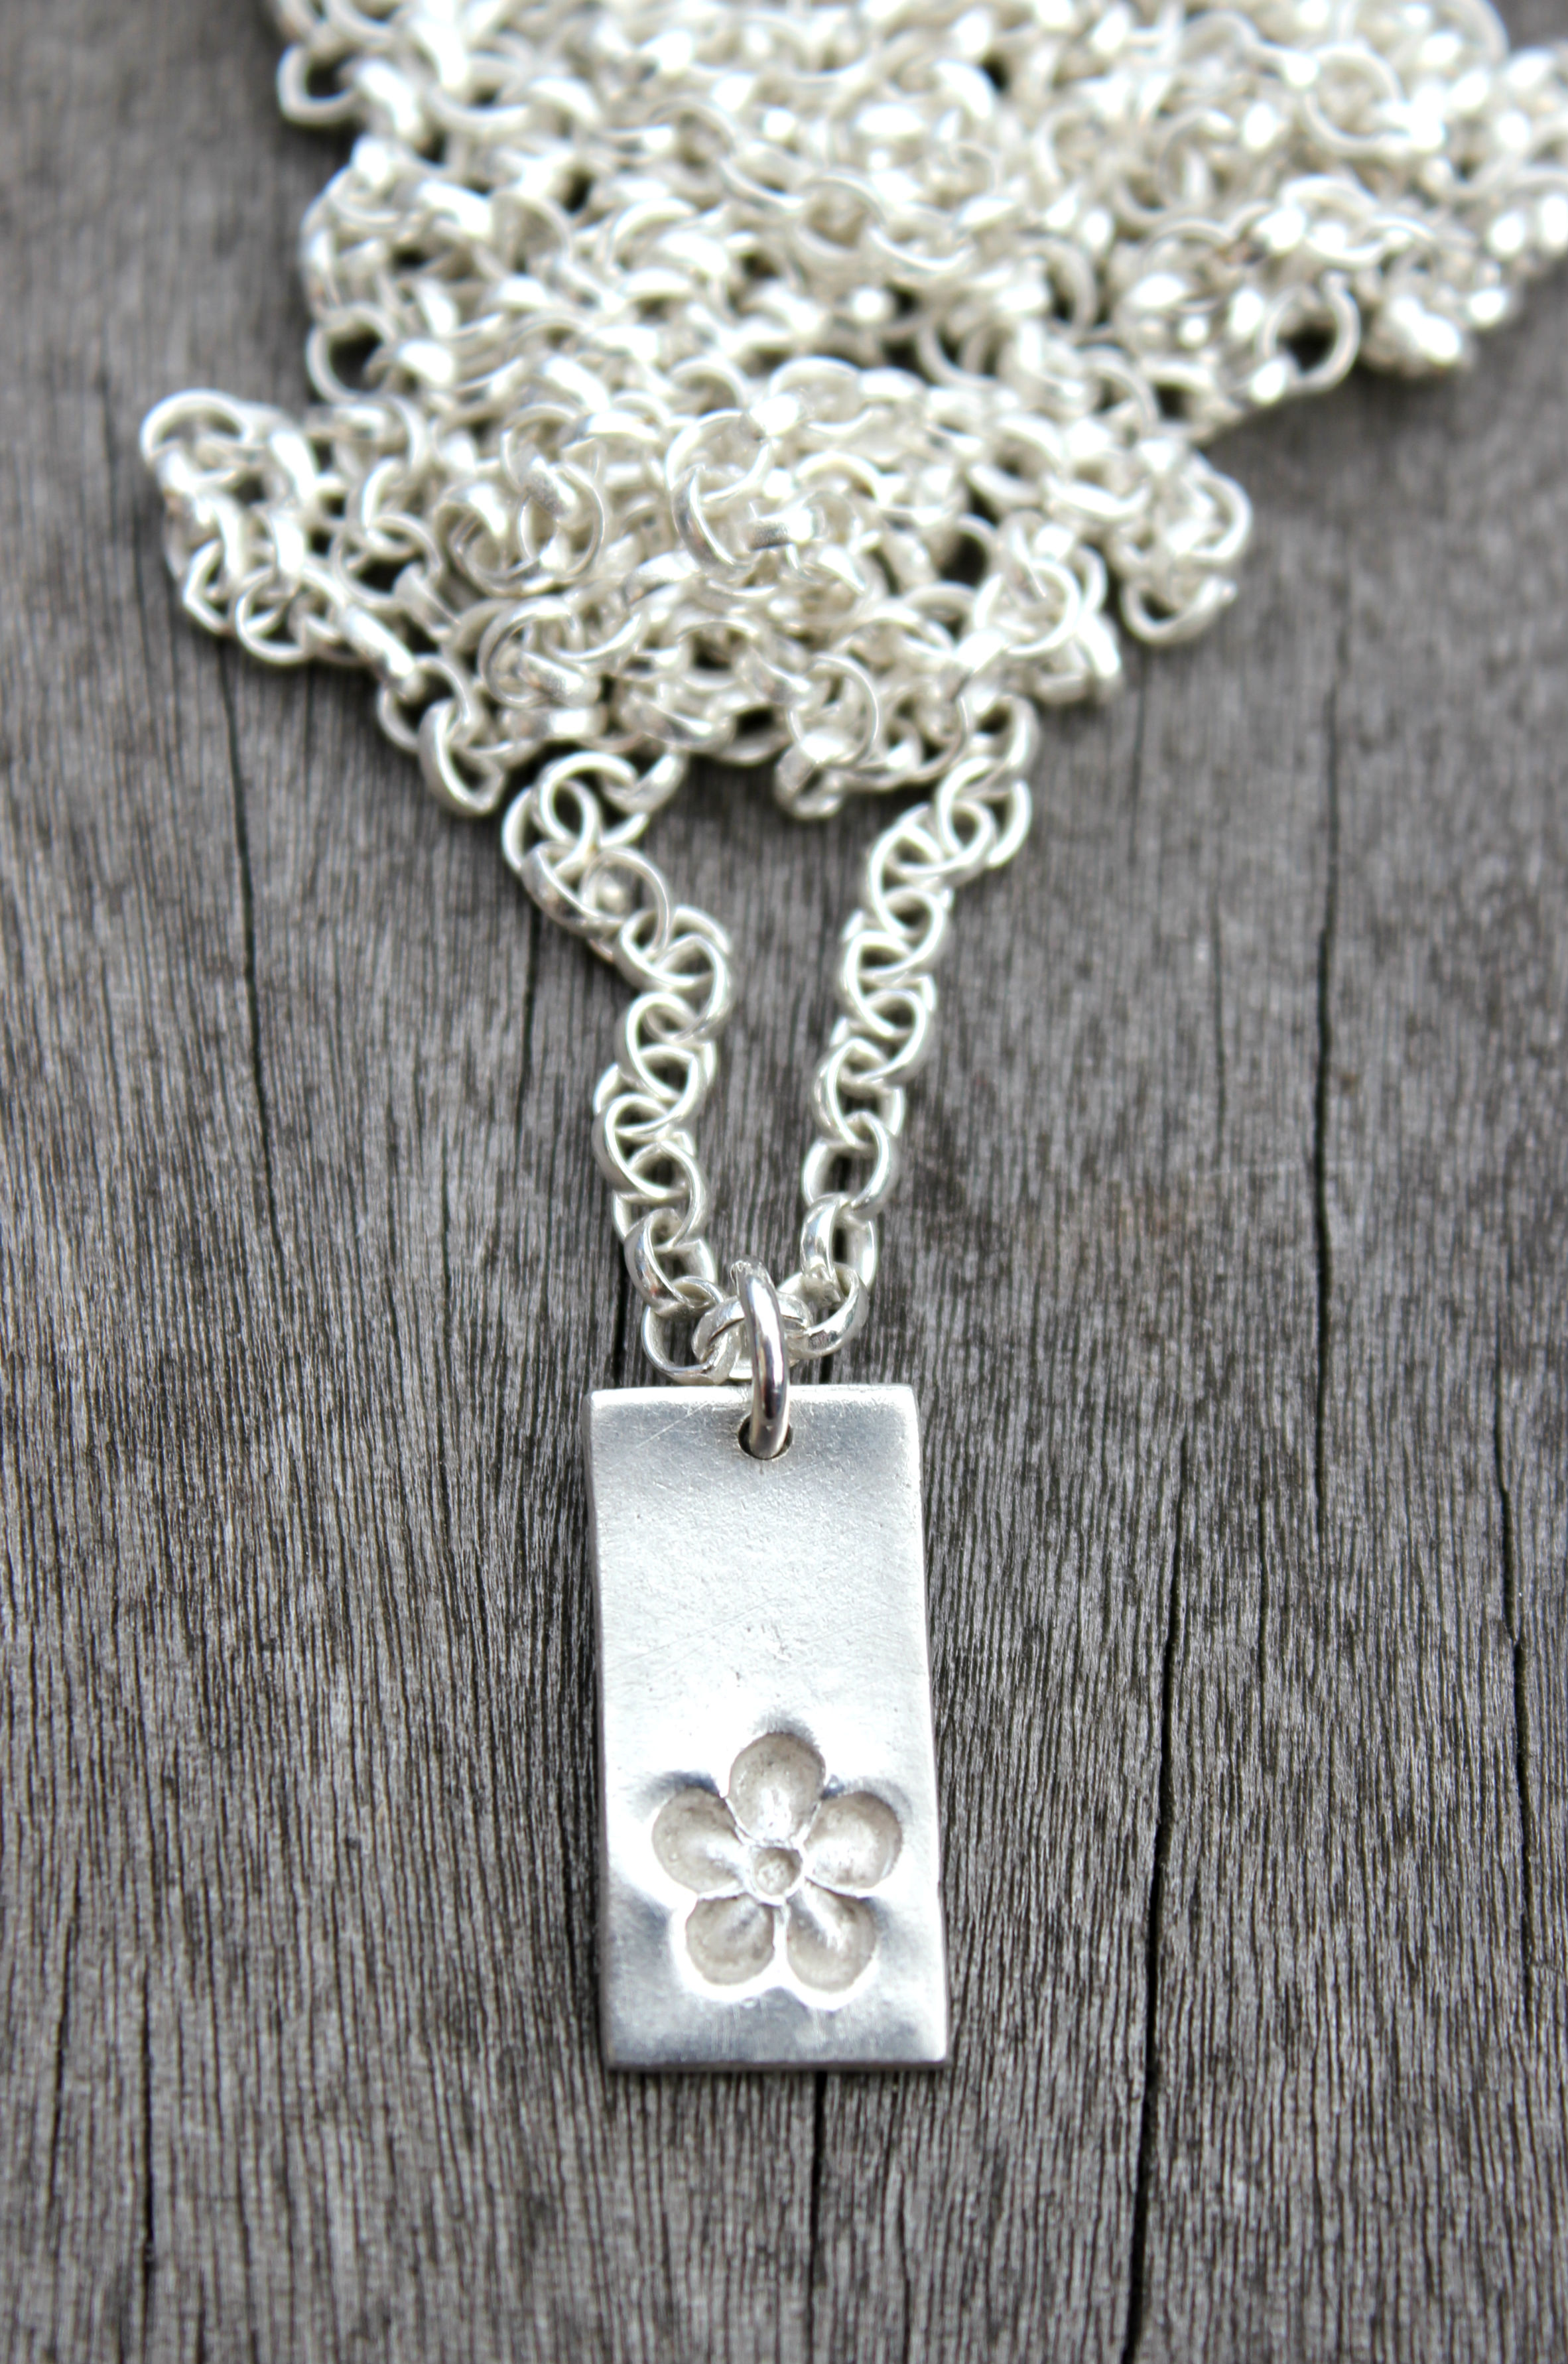 Silver flower pendant by little silver hedgehog.JPG